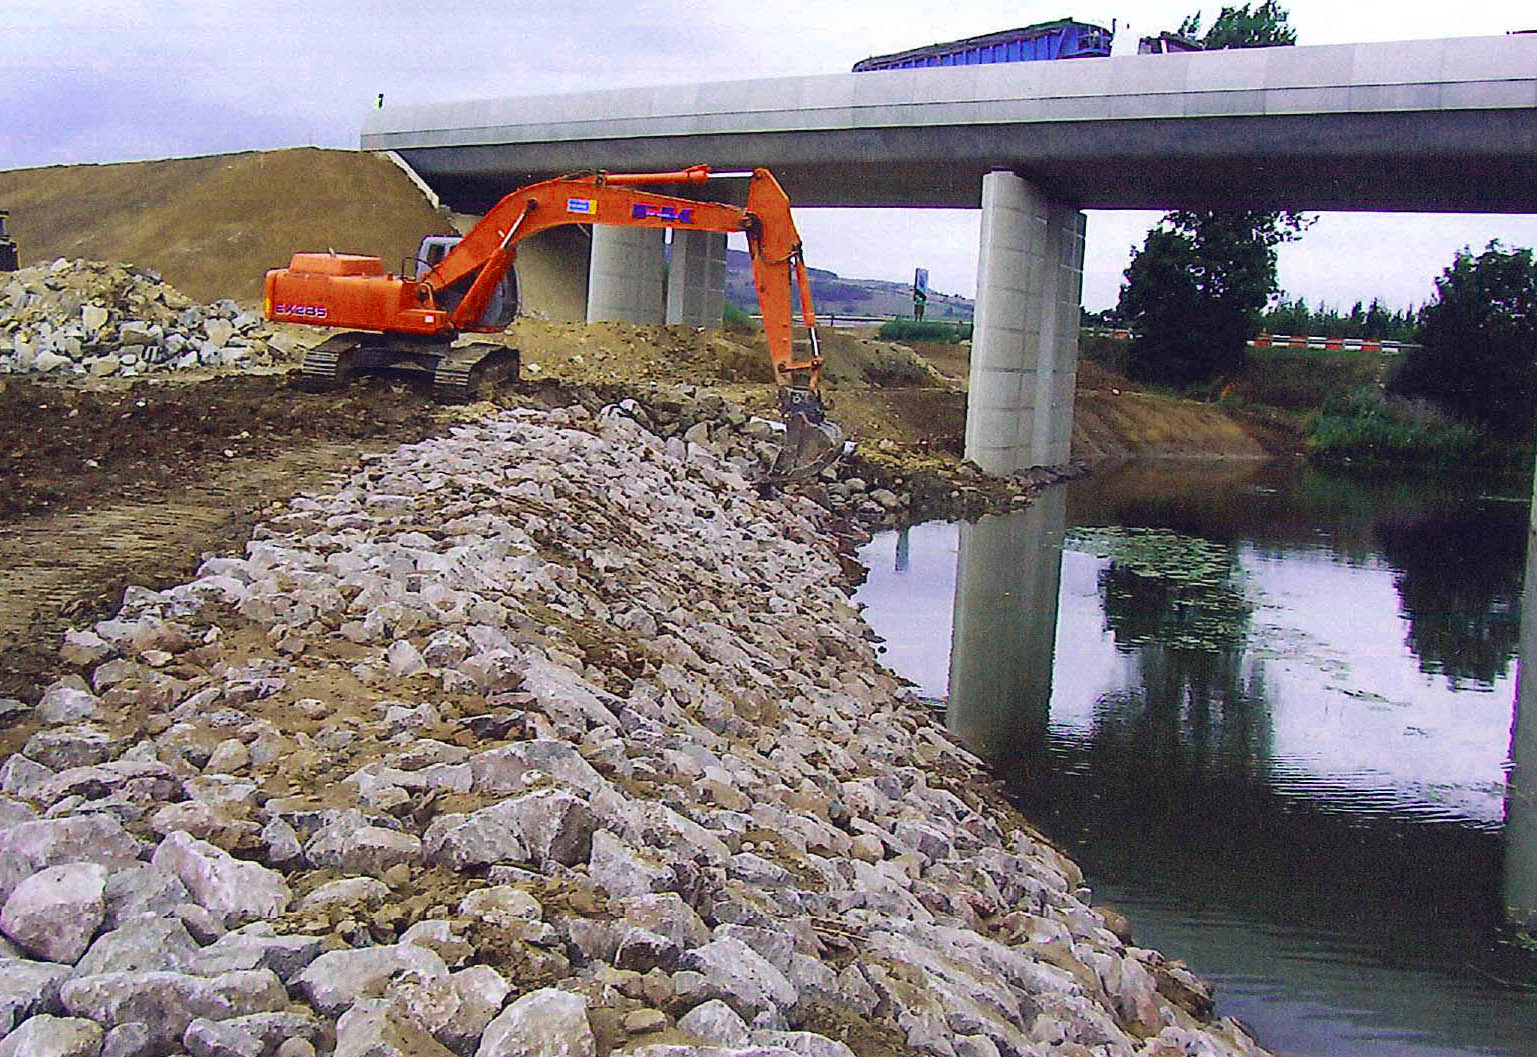 Rtablissement du cours d'eau aprs la construction de la LGV Est.
Rseau Ferr de France RFF
Pont de la Seille - 2006
